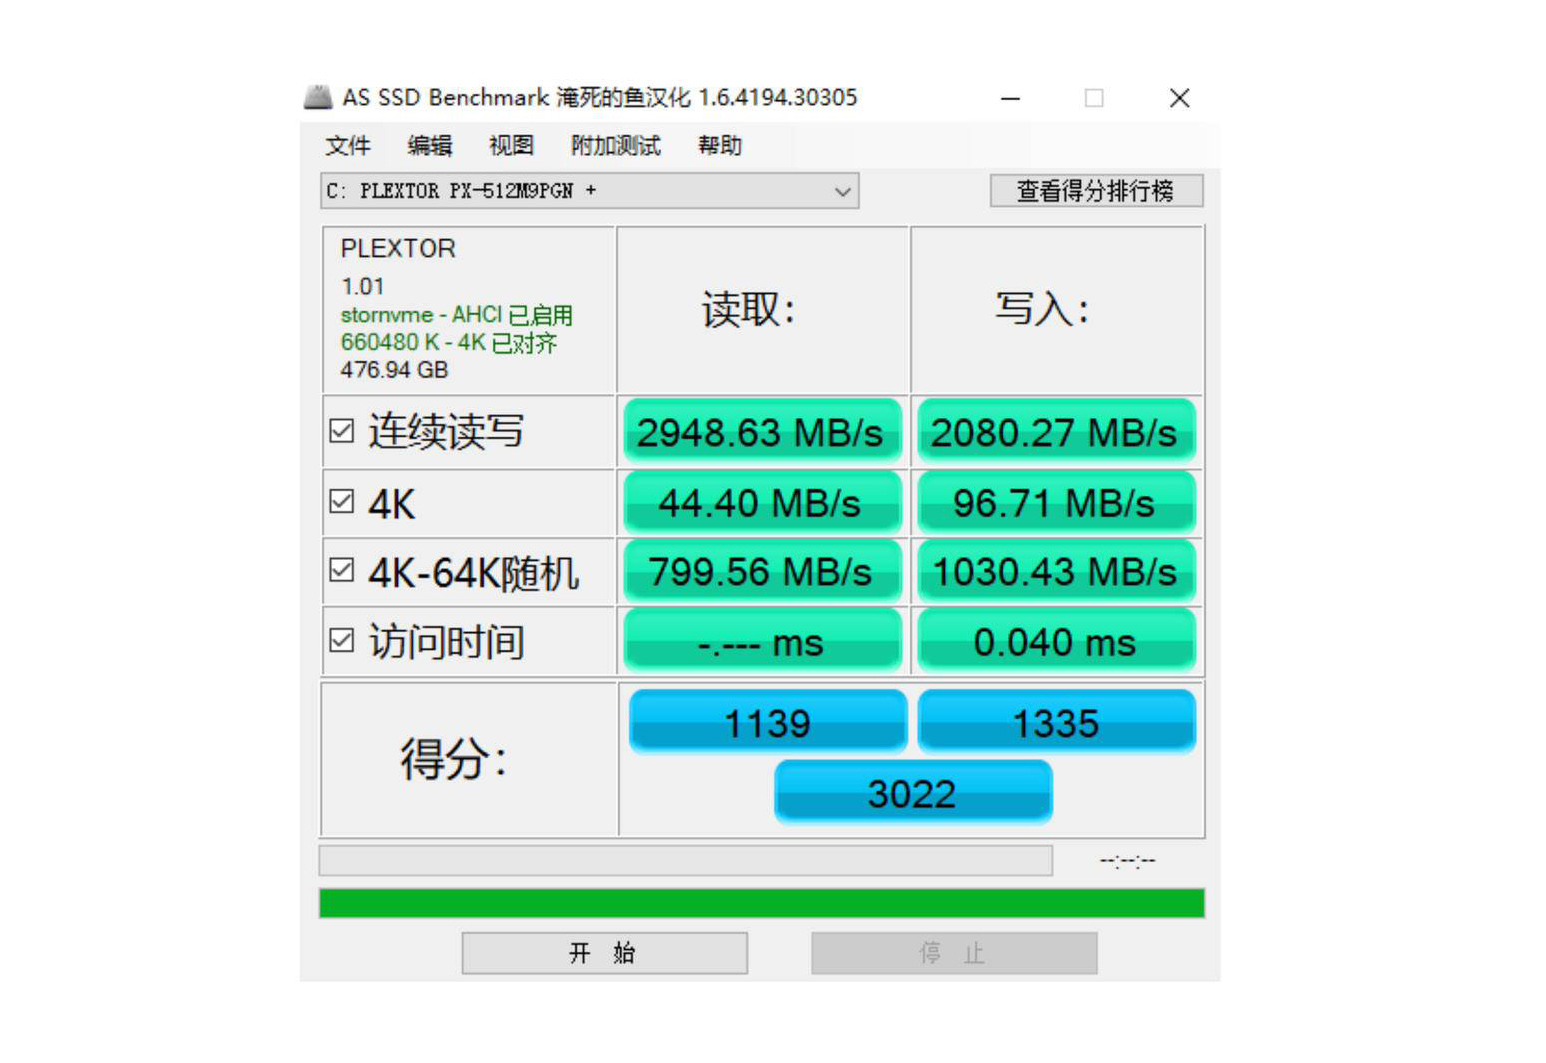 浦科特 M9P Plus 512G-AS SSD BENCHMARK测试